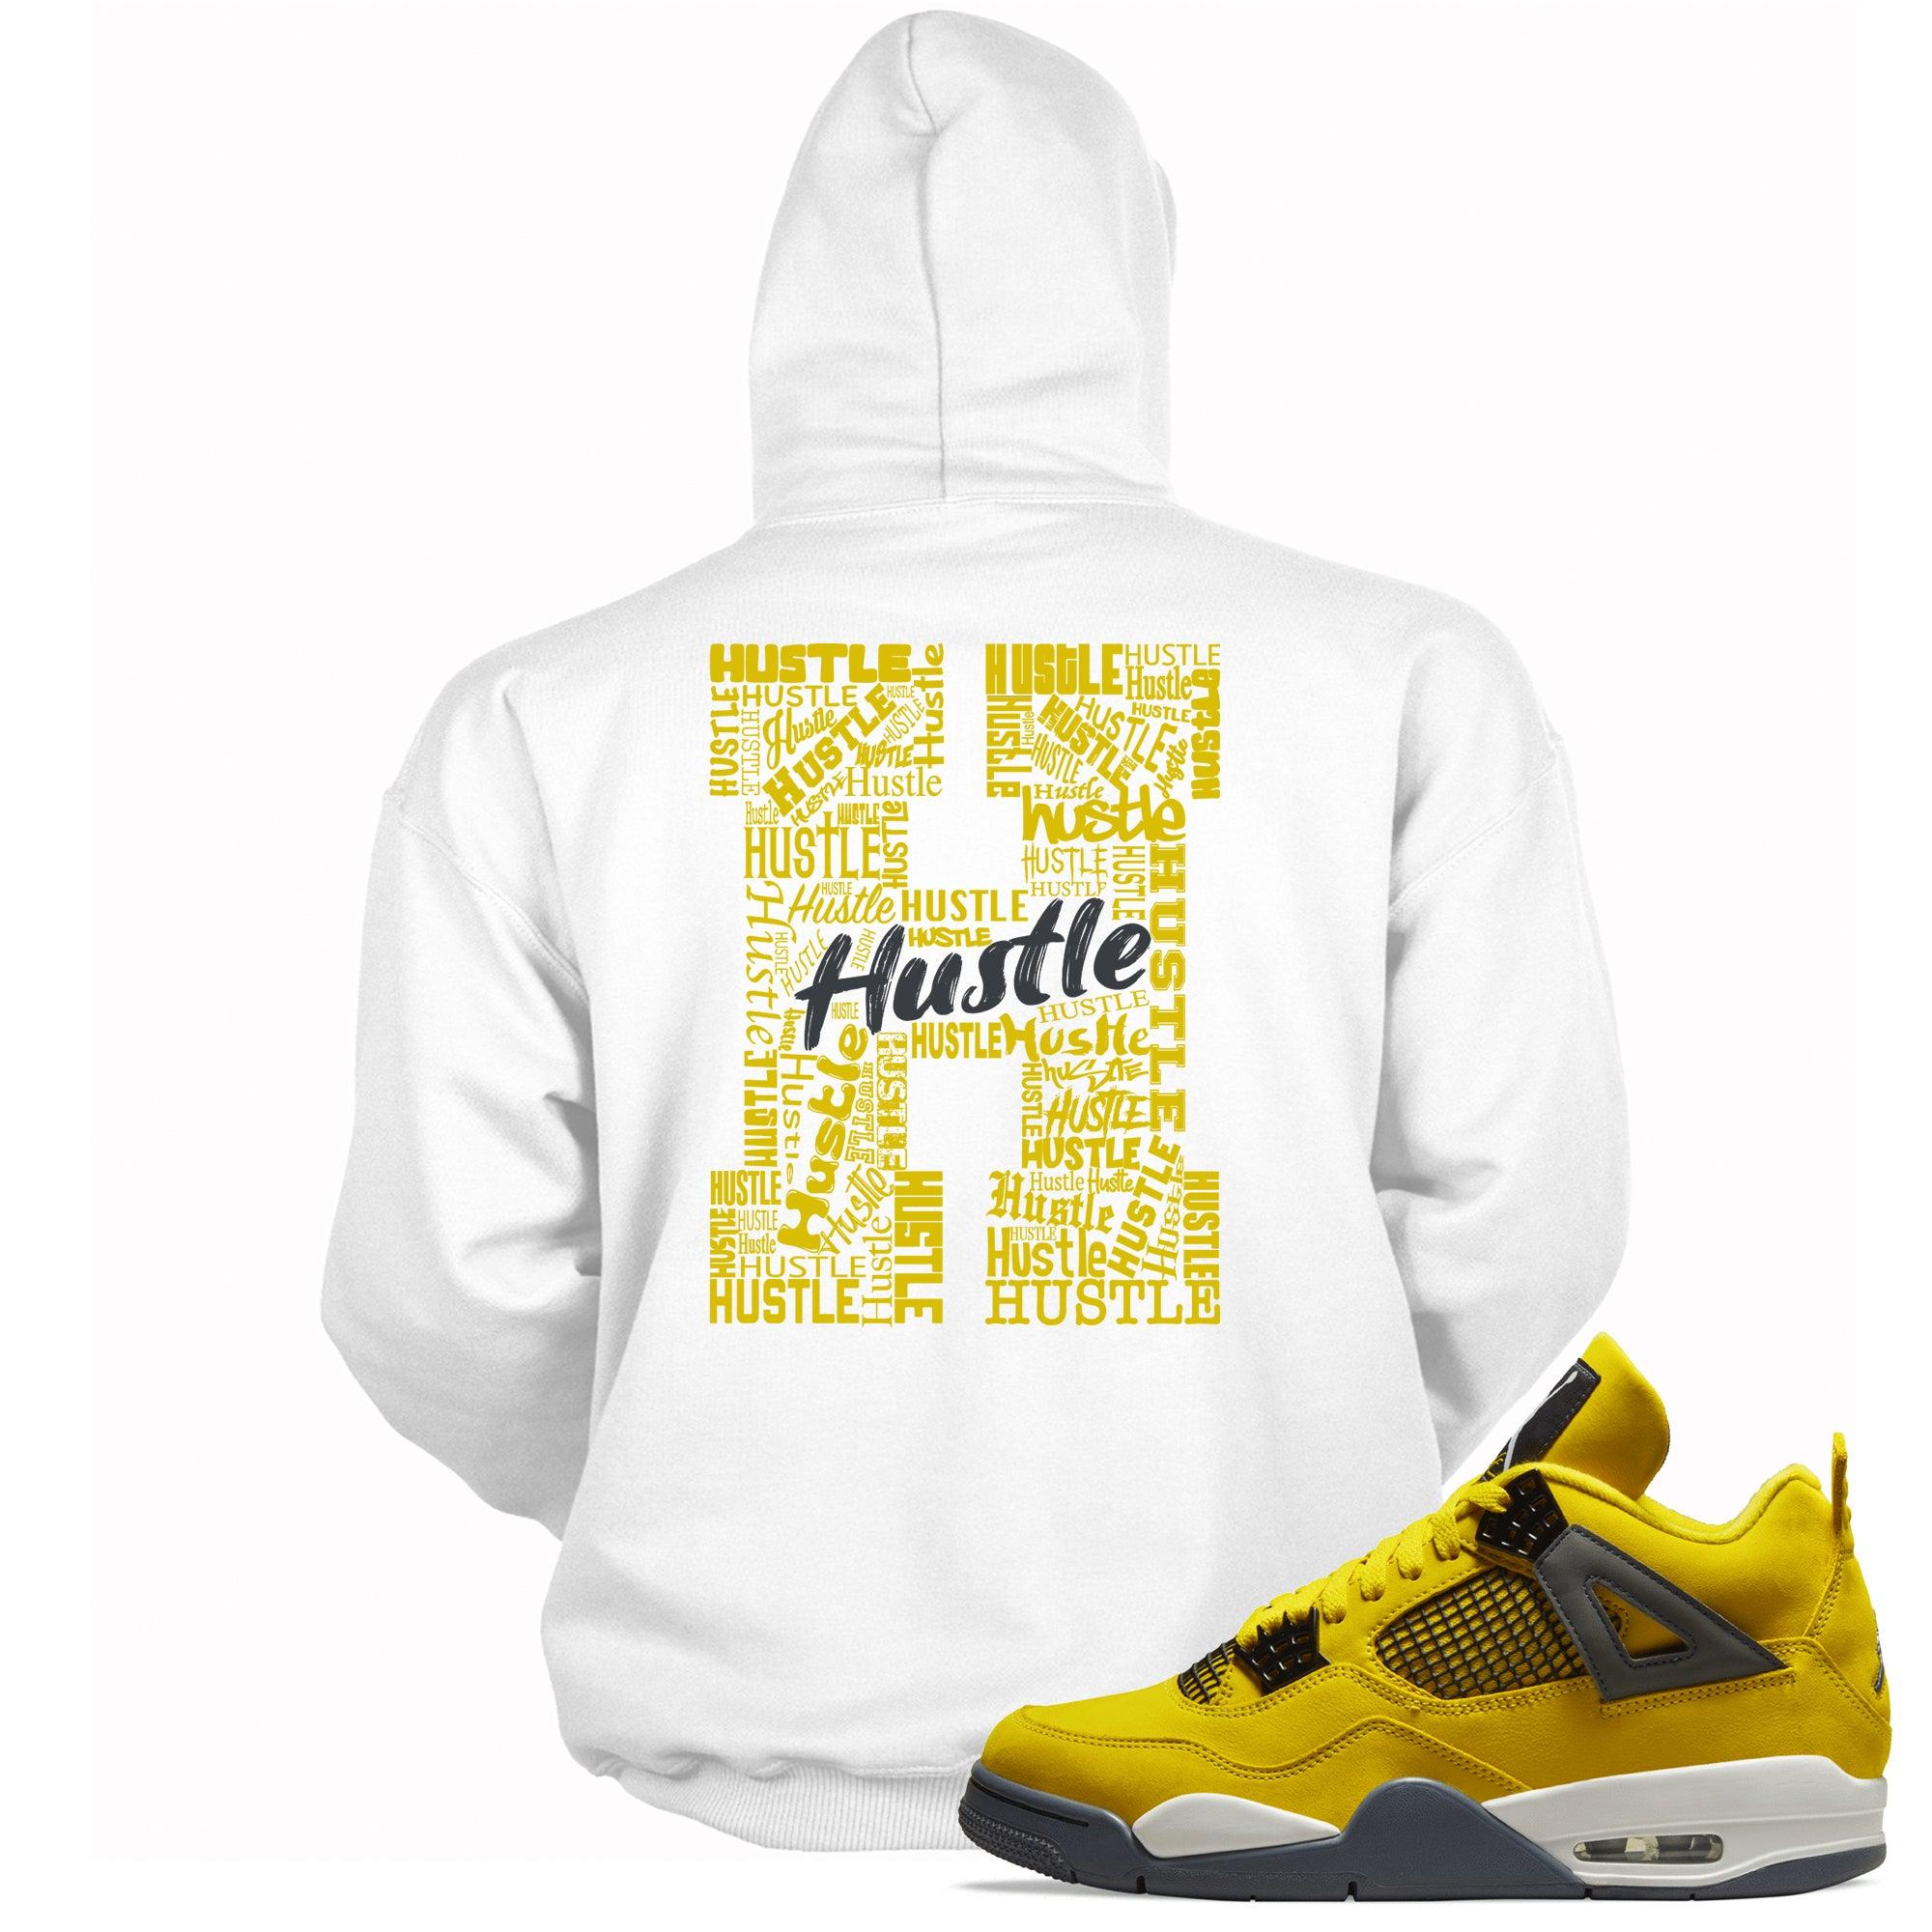 H For Hustle Hoodie Jordan 4s Retro Lightning photo